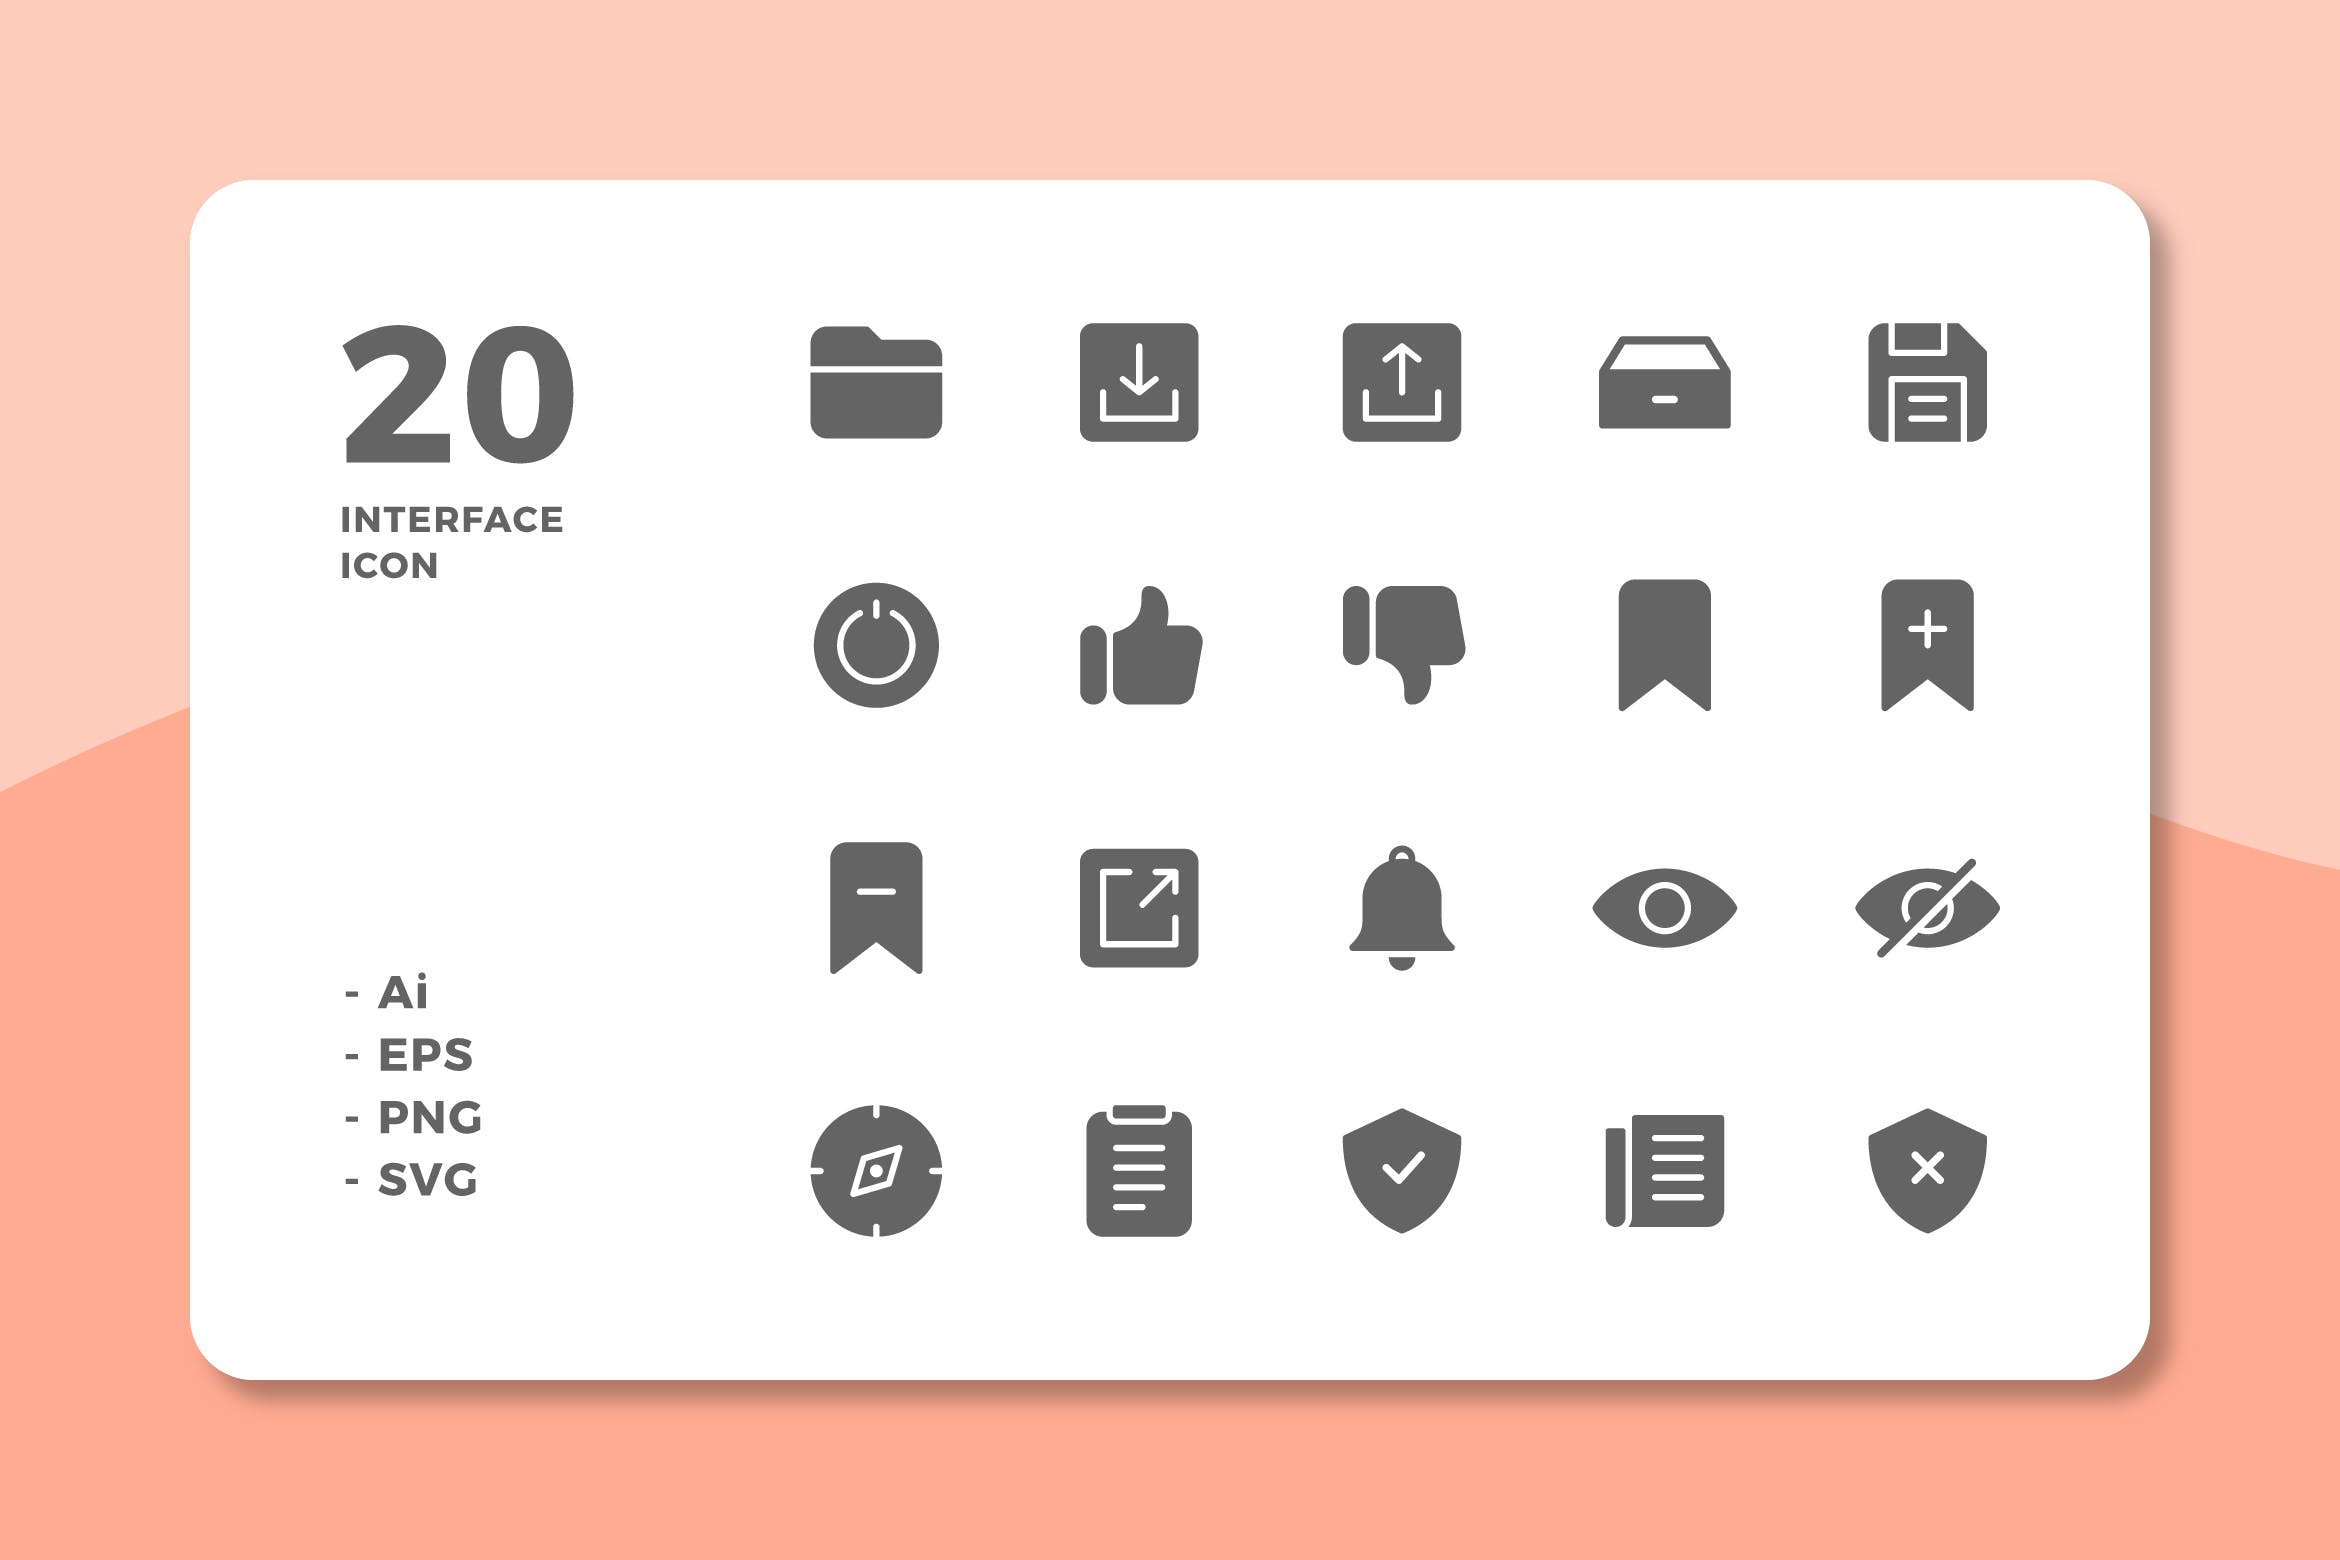 20枚UI界面设计APP操作选项16设计素材网精选图标v3 20 Interface Icons Vol.3 (Solid)插图